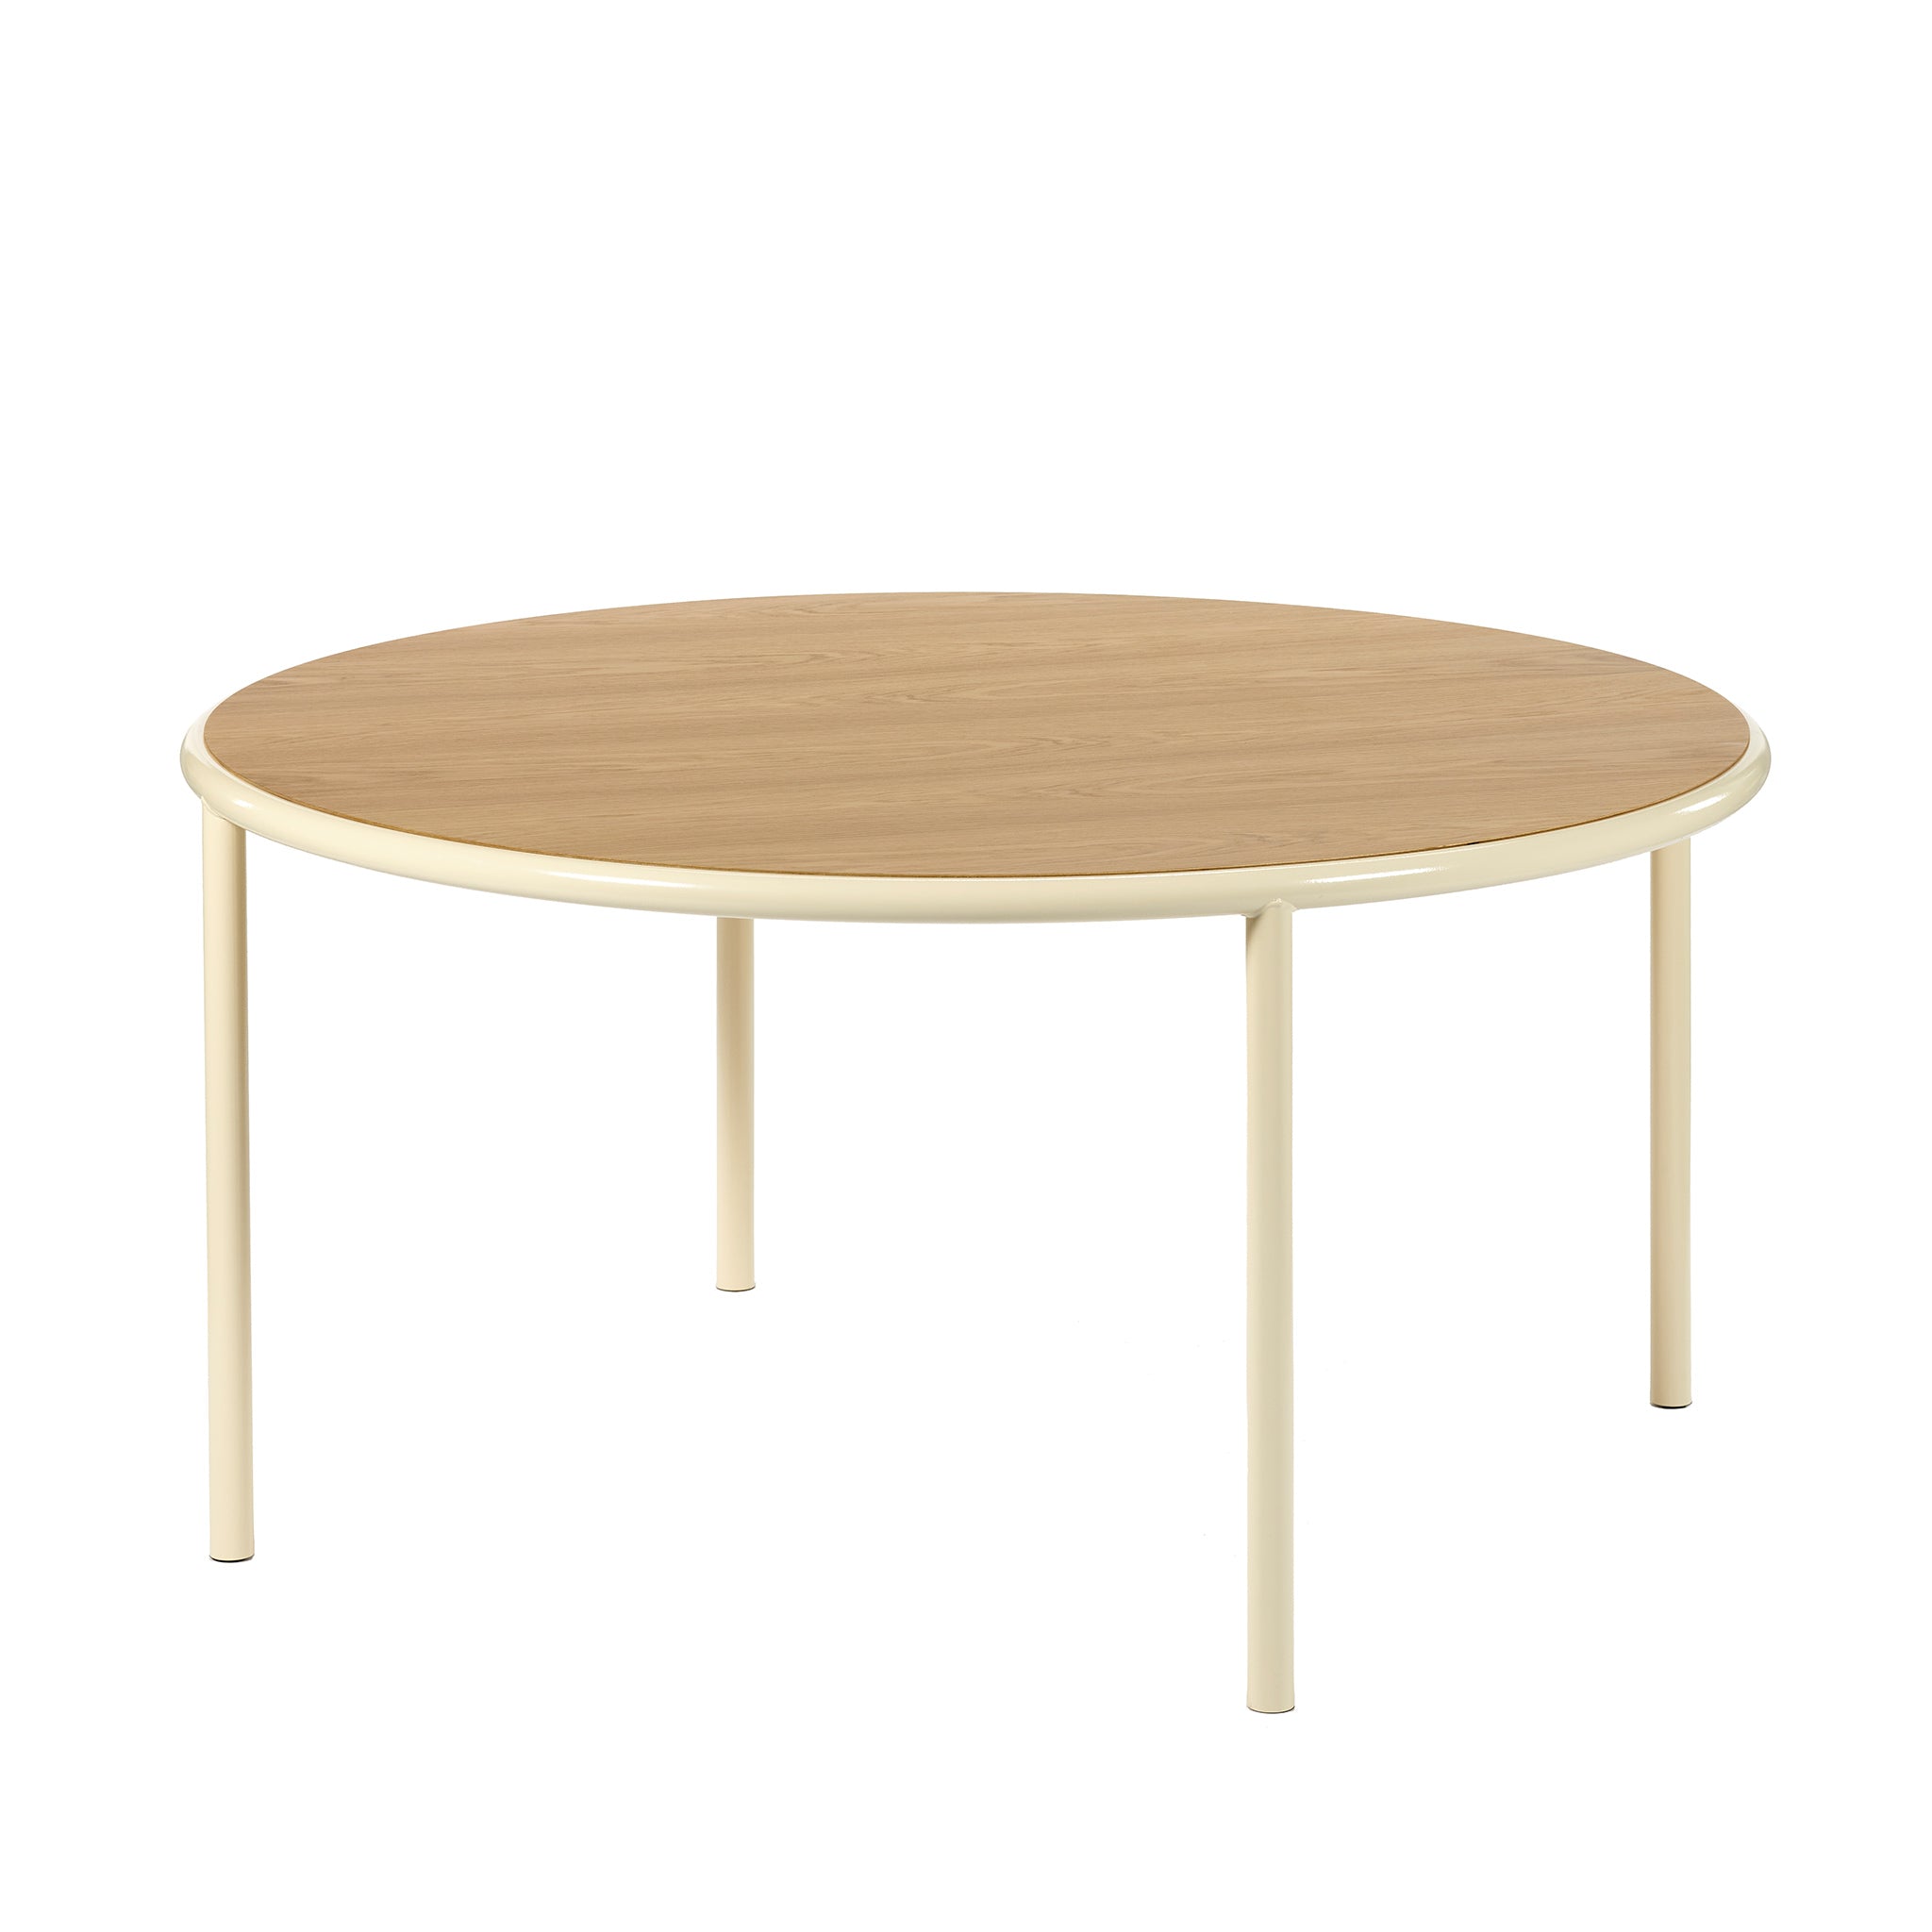 Valerie Objects Tisch | Wood round